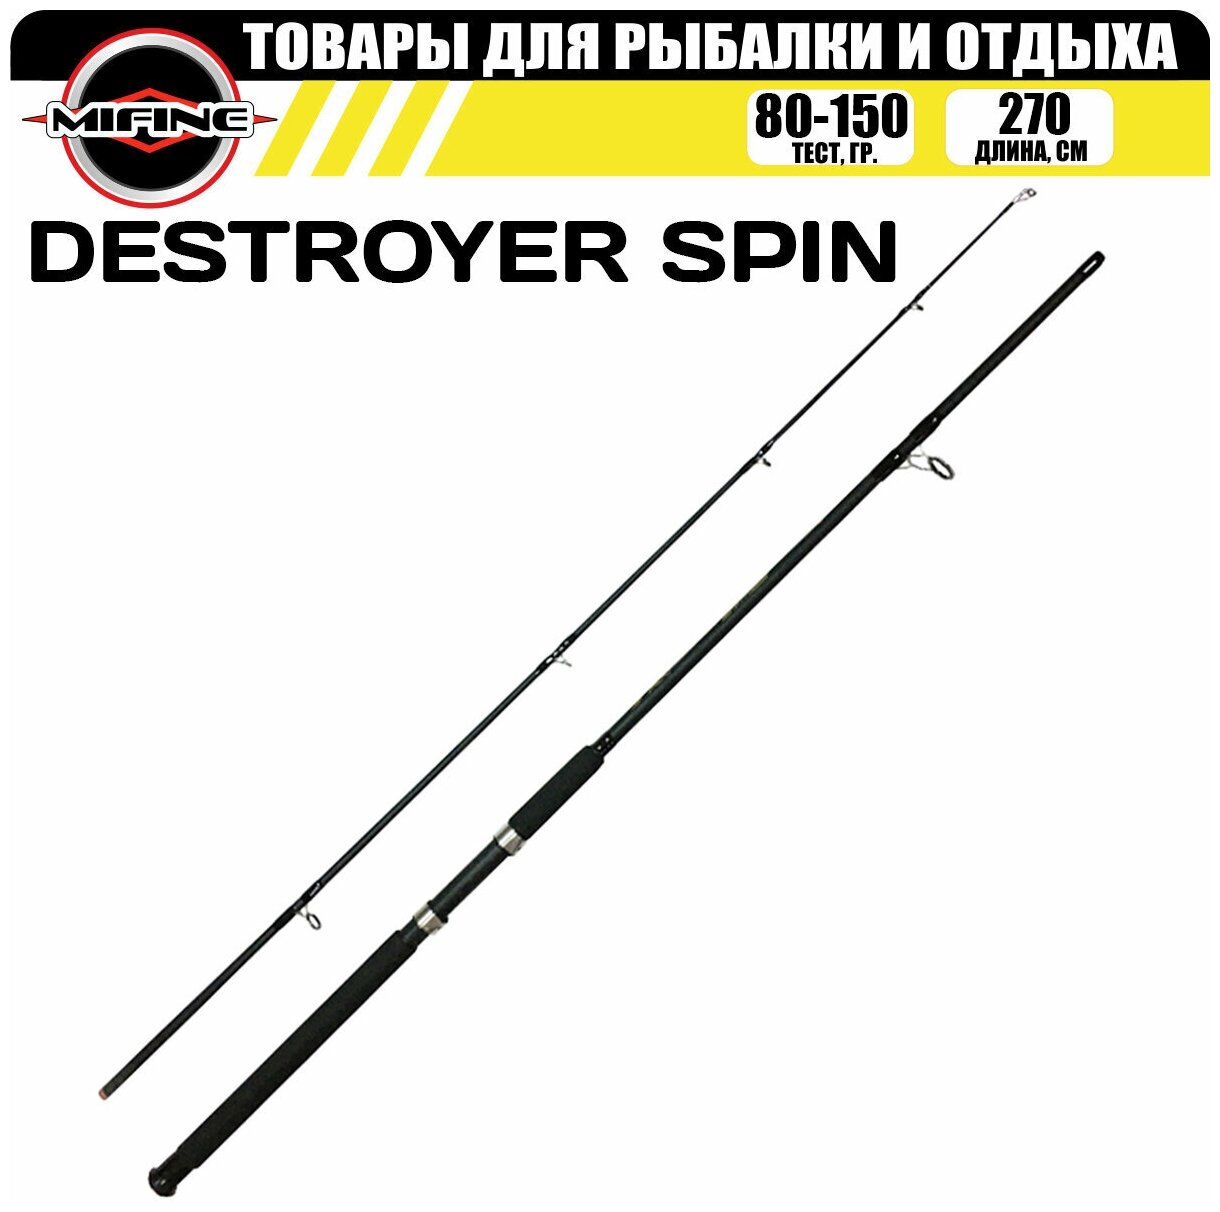 Спиннинг MIFINE DESTROYER SPIN 2.7м (80-150гр), для рыбалки, рыболовный, штекерный